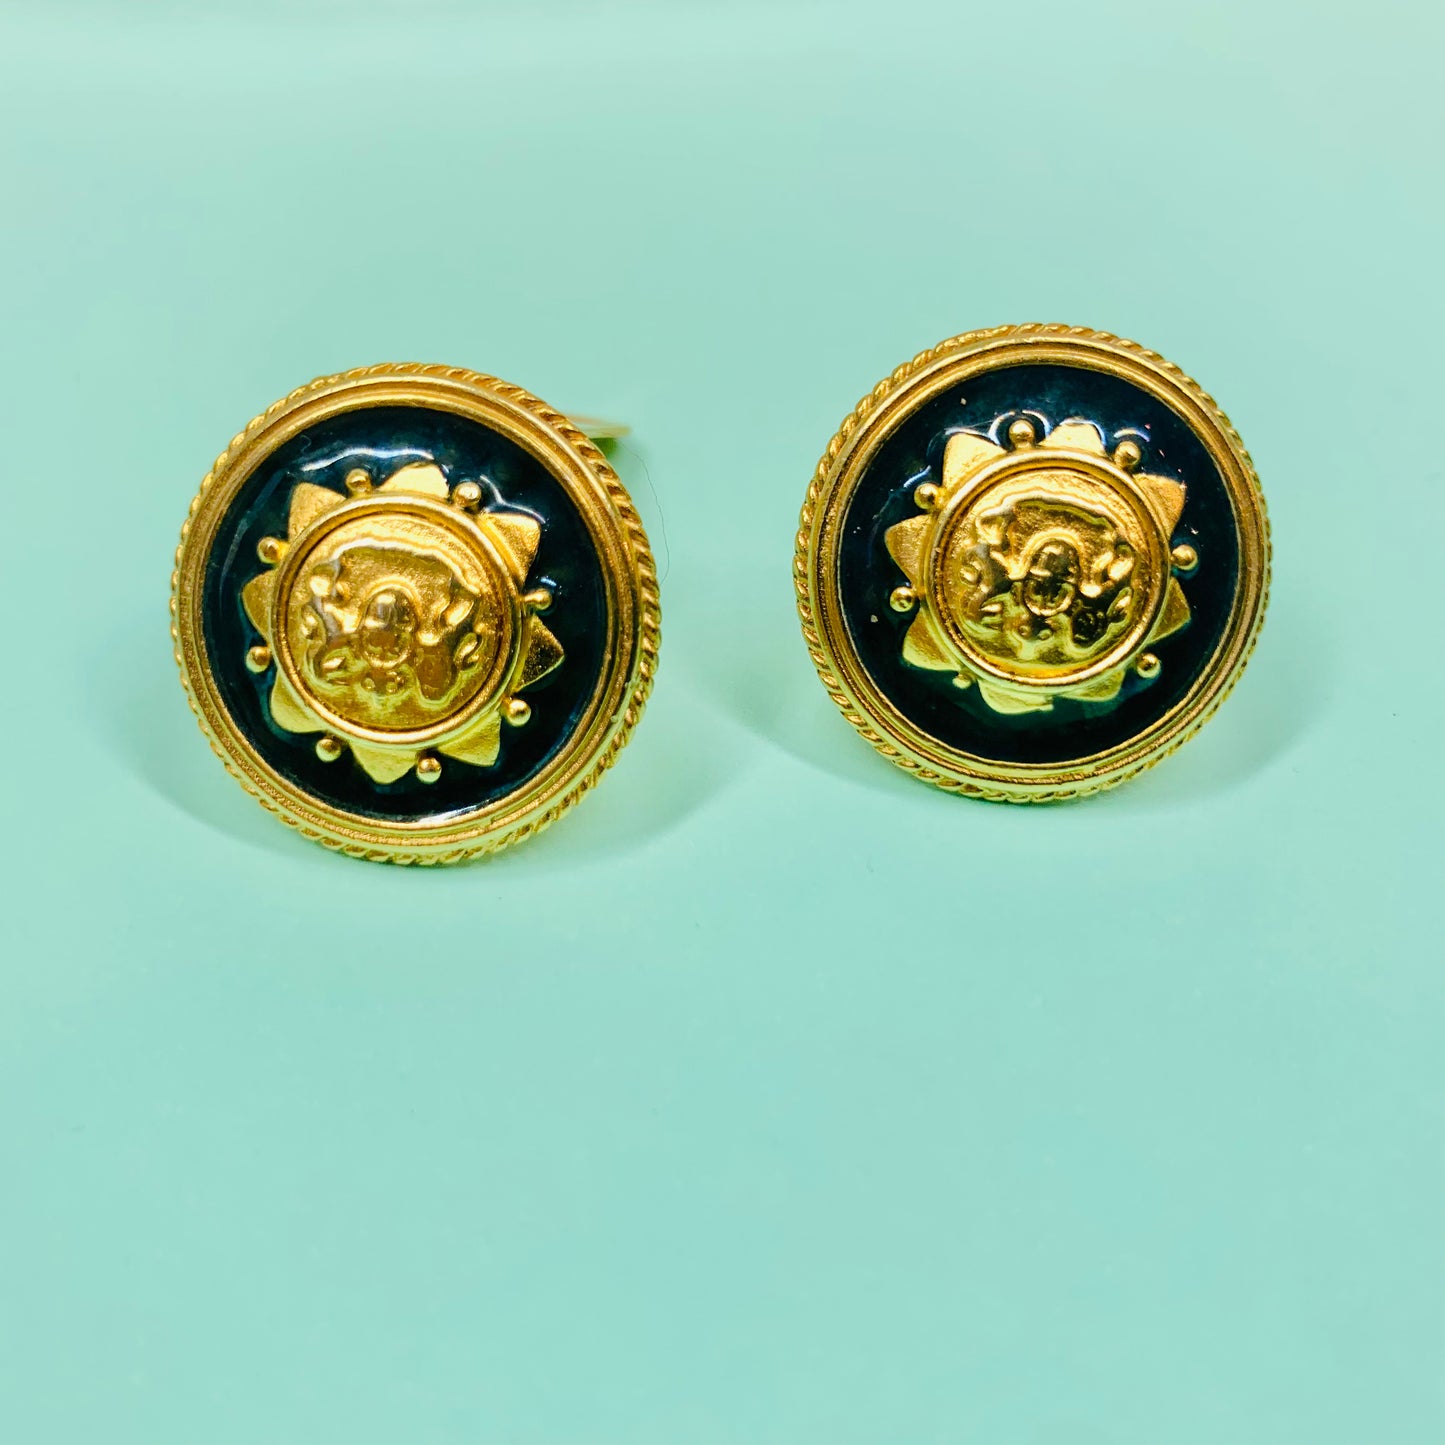 1960s Italian gold plated brass black enamel emblem button clip on earrings